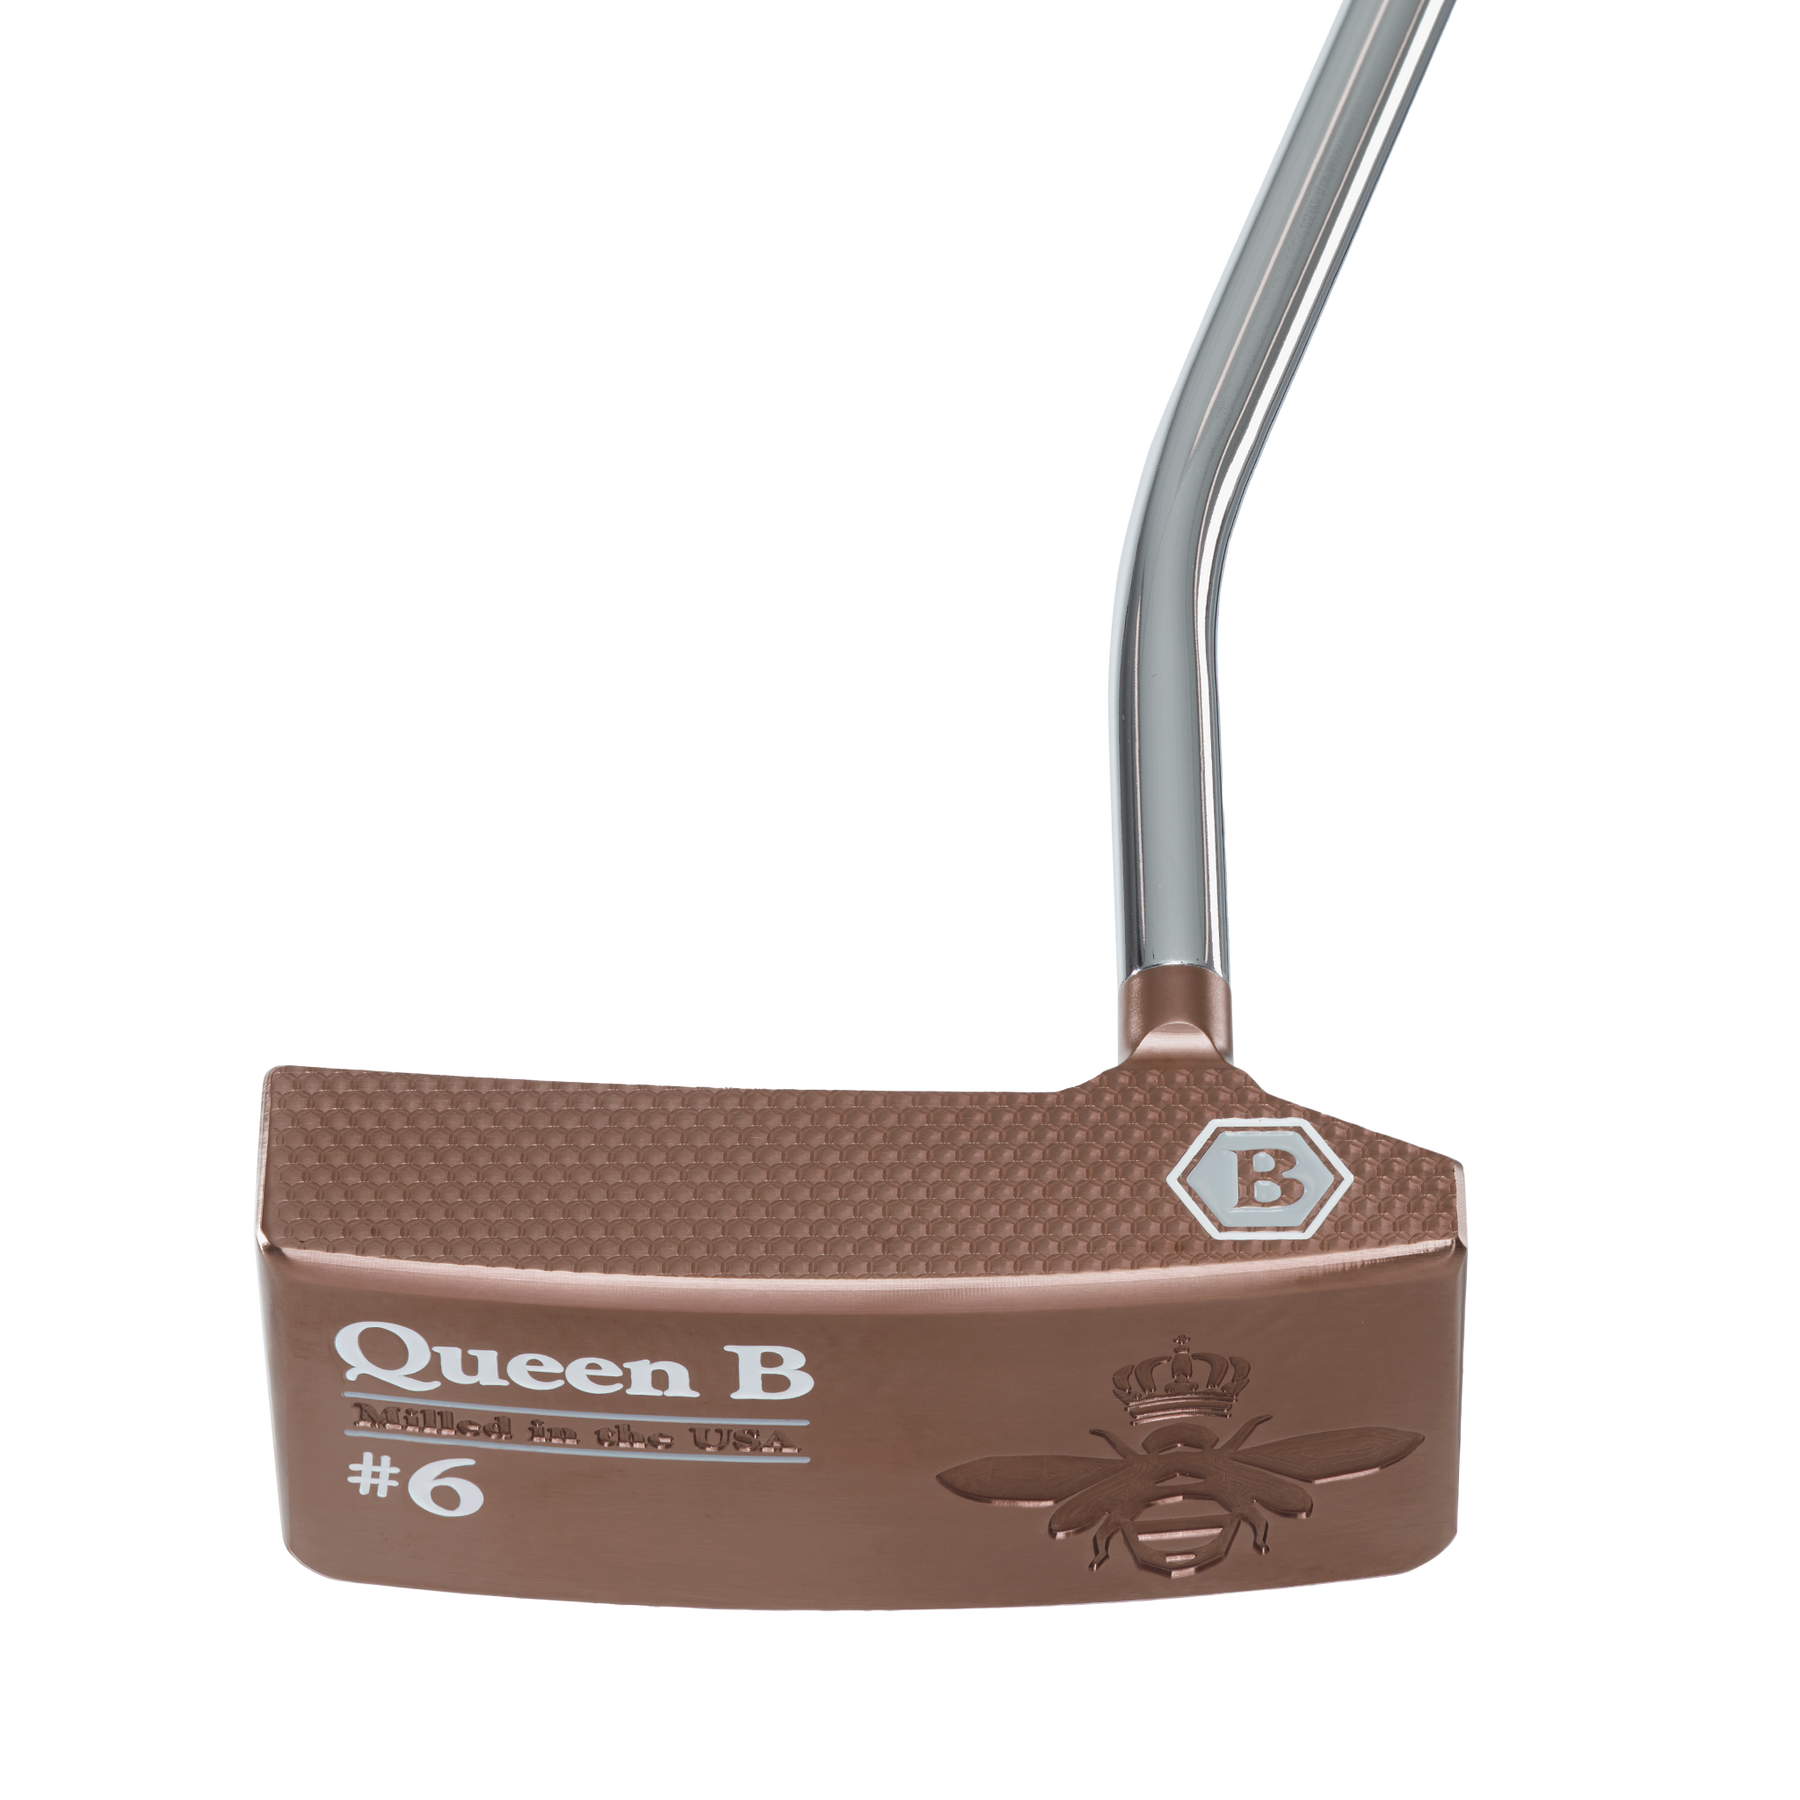 Queen B 6 Putter  Bettinardi Golf – Studio B